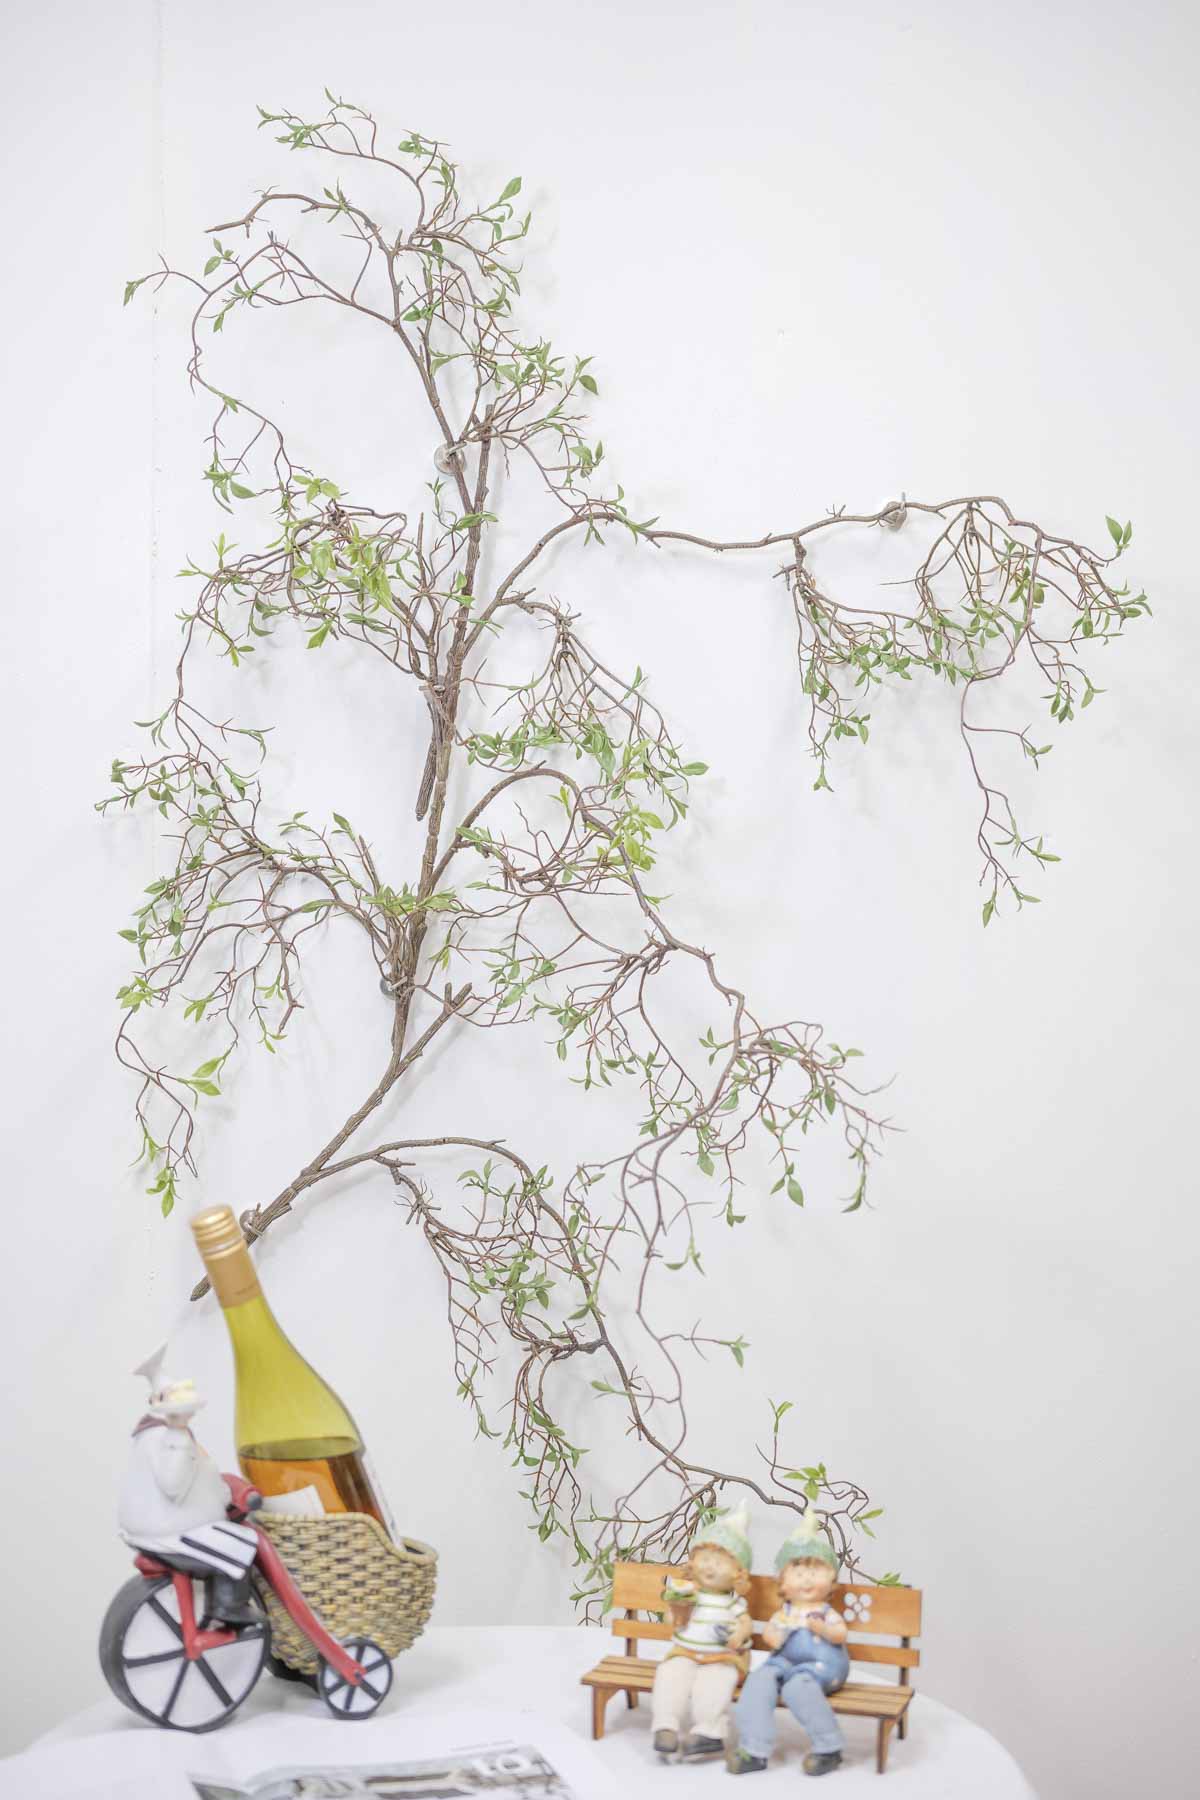 조화식물 버드나무 새순잎 바인 실내조경 연출사진